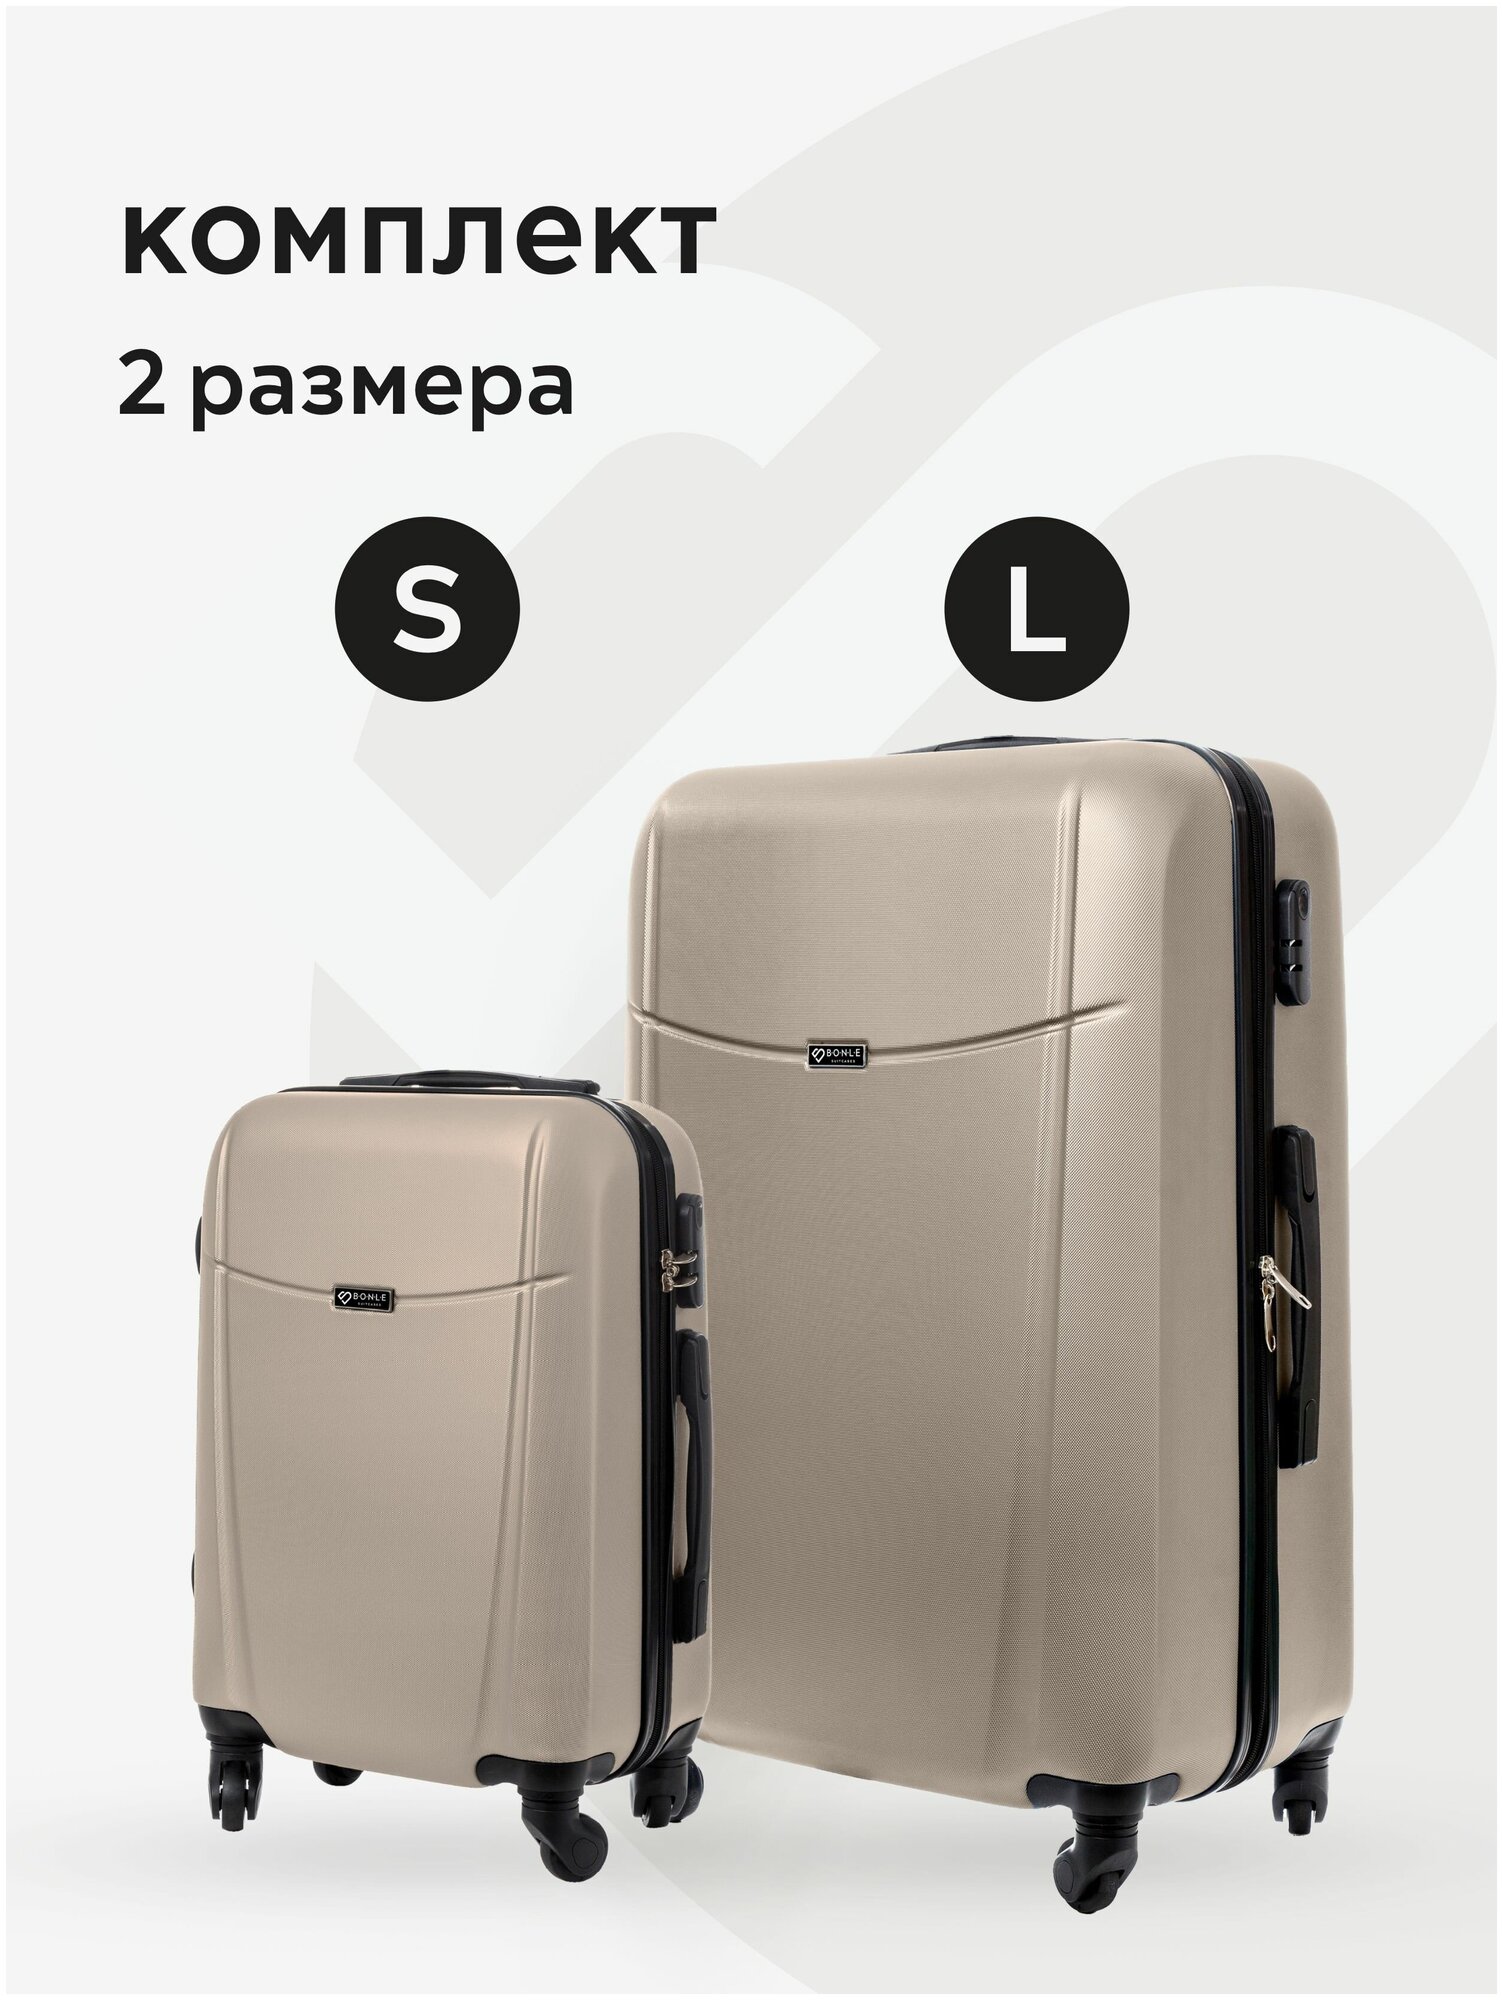 Комплект чемоданов 2шт Тасмания Светло-коричневый размер L S маленький большой ручная кладь дорожный не тканевый